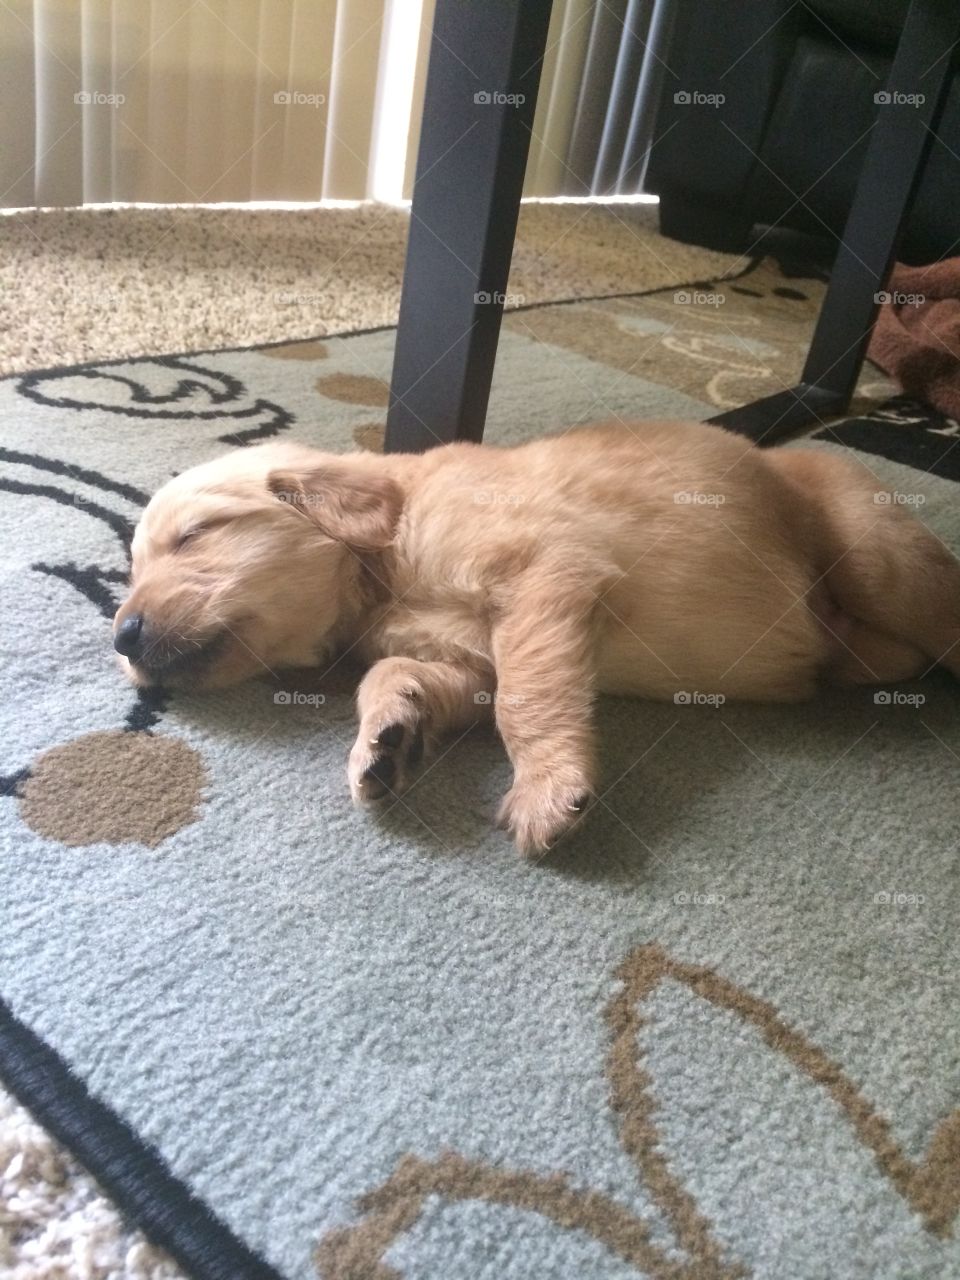 Puppy. Sleeping golden puppy